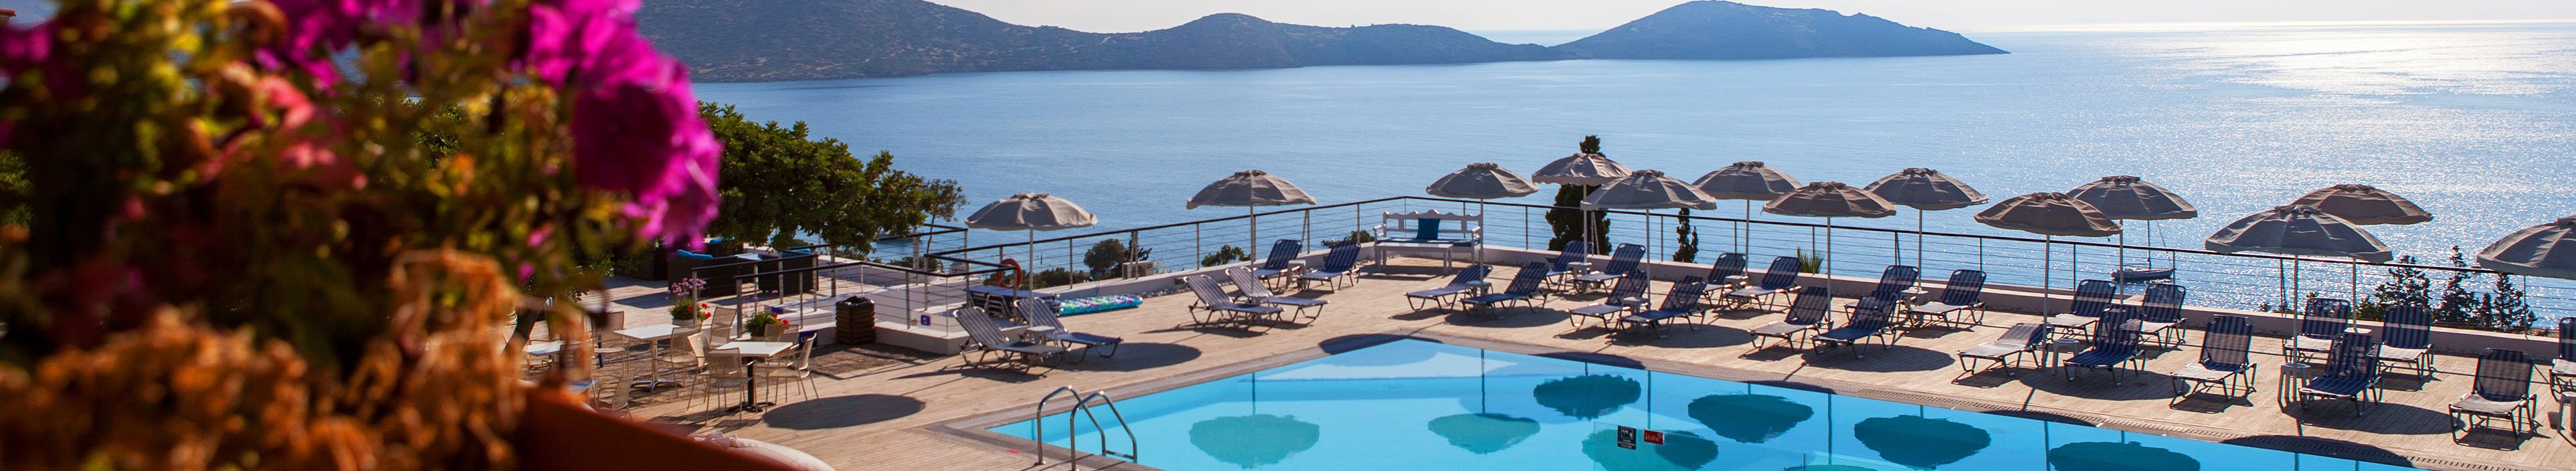 Hotel auf Kreta, Pool mit Liegen und Sonnenschirmen, im Hintergrund das Meer. 